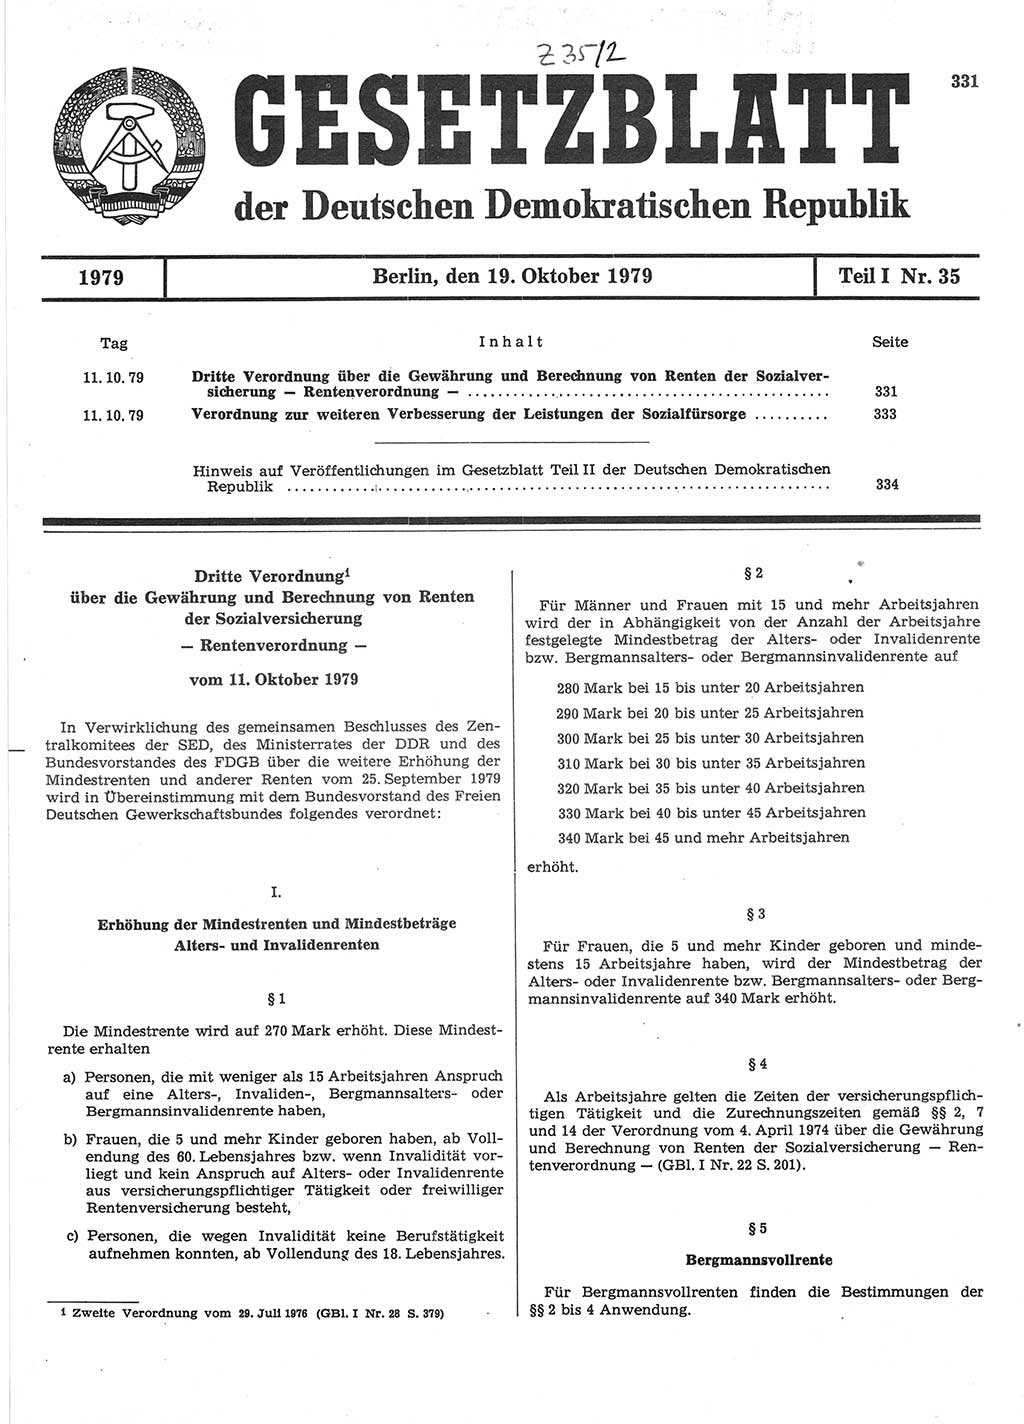 Gesetzblatt (GBl.) der Deutschen Demokratischen Republik (DDR) Teil Ⅰ 1979, Seite 331 (GBl. DDR Ⅰ 1979, S. 331)